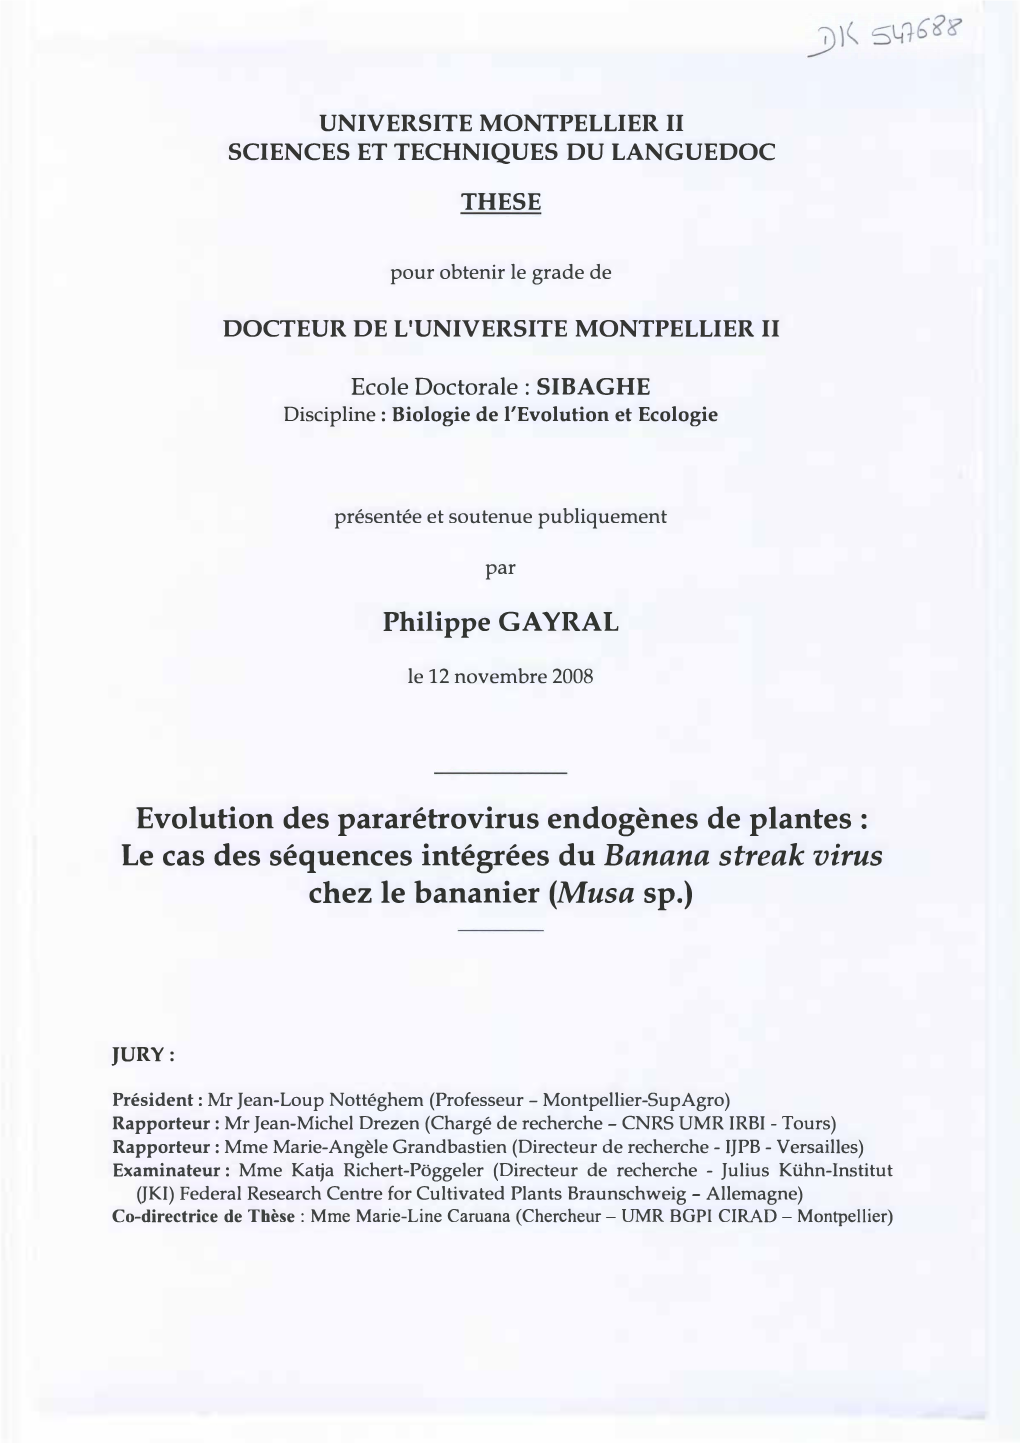 Evolution Des Pararétrovirus Endogènes De Plantes : Le Cas Des Séquences Intégrées Du Banana Streak Virus Chez Le Bananier (Musa Sp.)